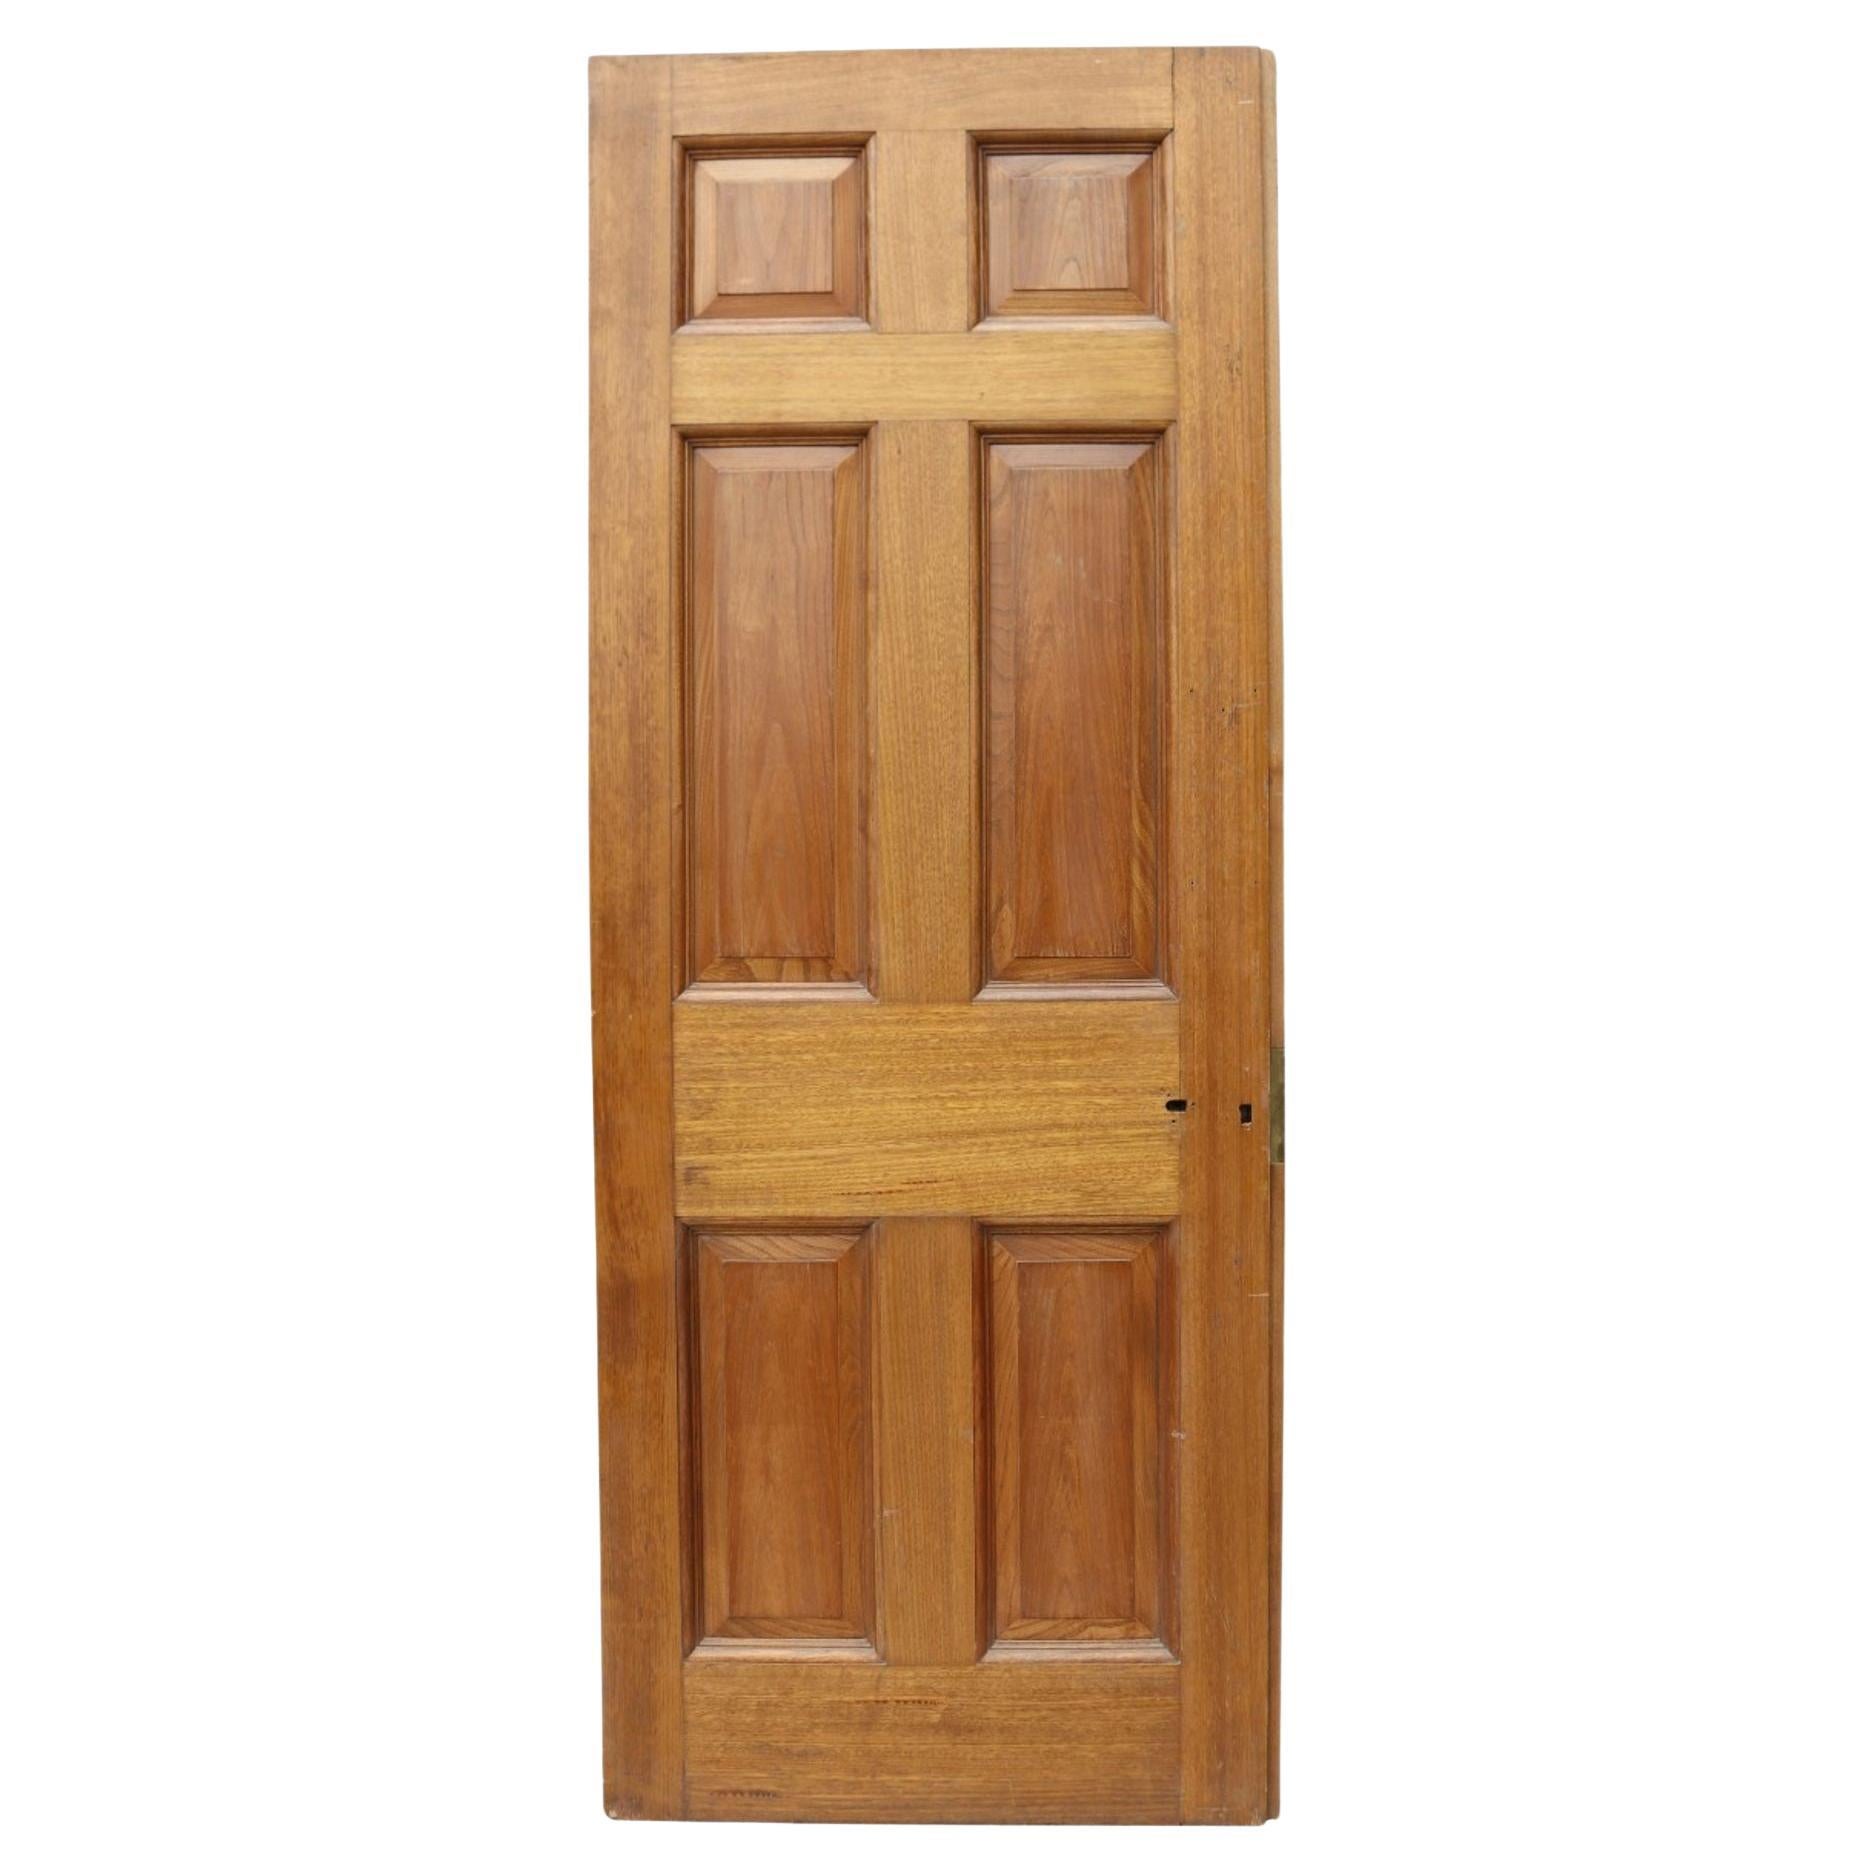 Antique Hardwood Exterior Door For Sale